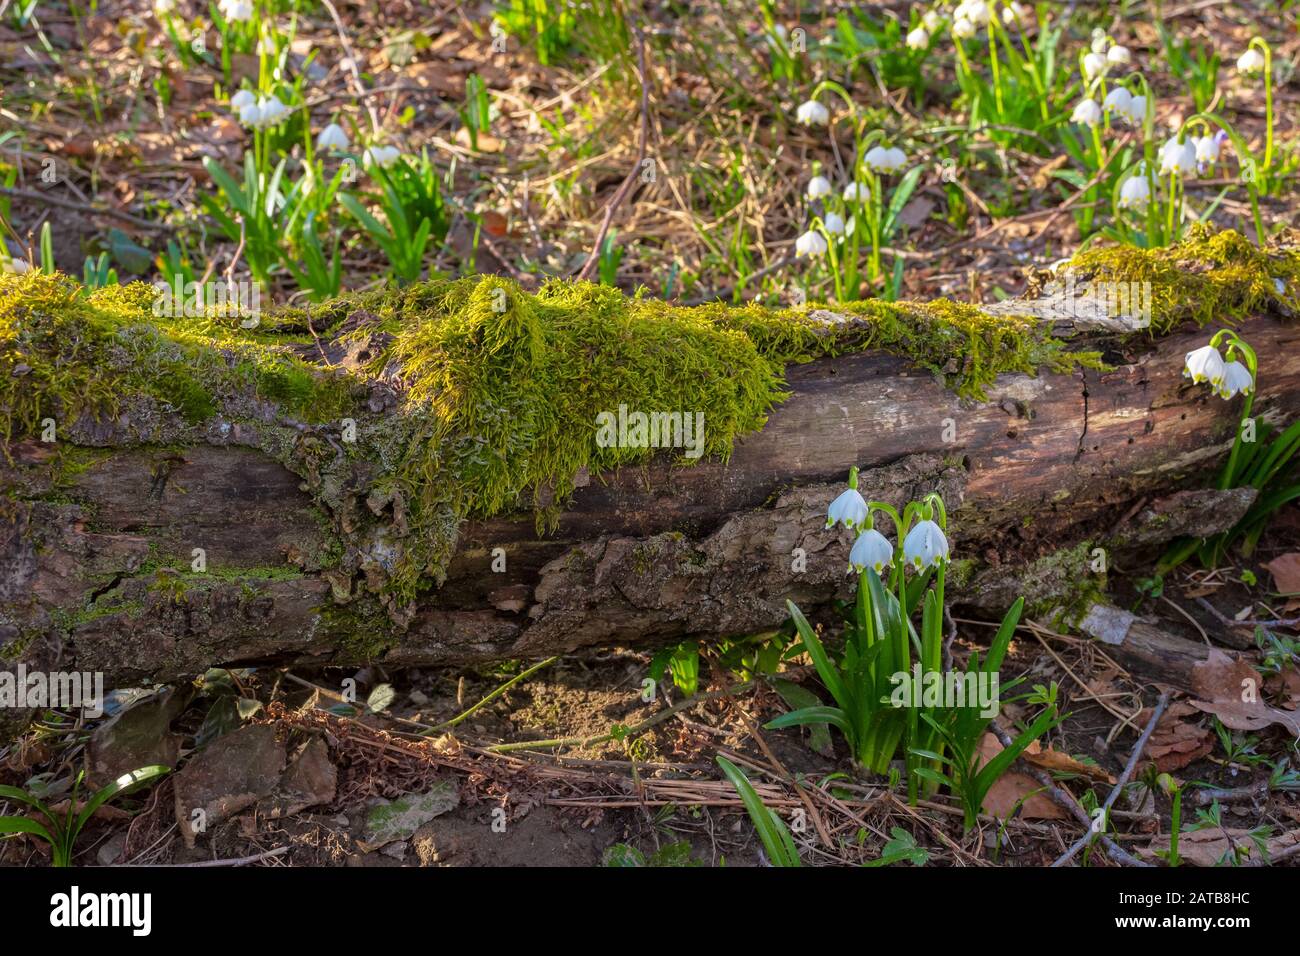 Schneeflocke Blüte im Wald. Frühling Landschaft mit den ersten Blumen. sonniges Wetter. Moos bedeckt gefallenen Baum im Hintergrund Stockfoto